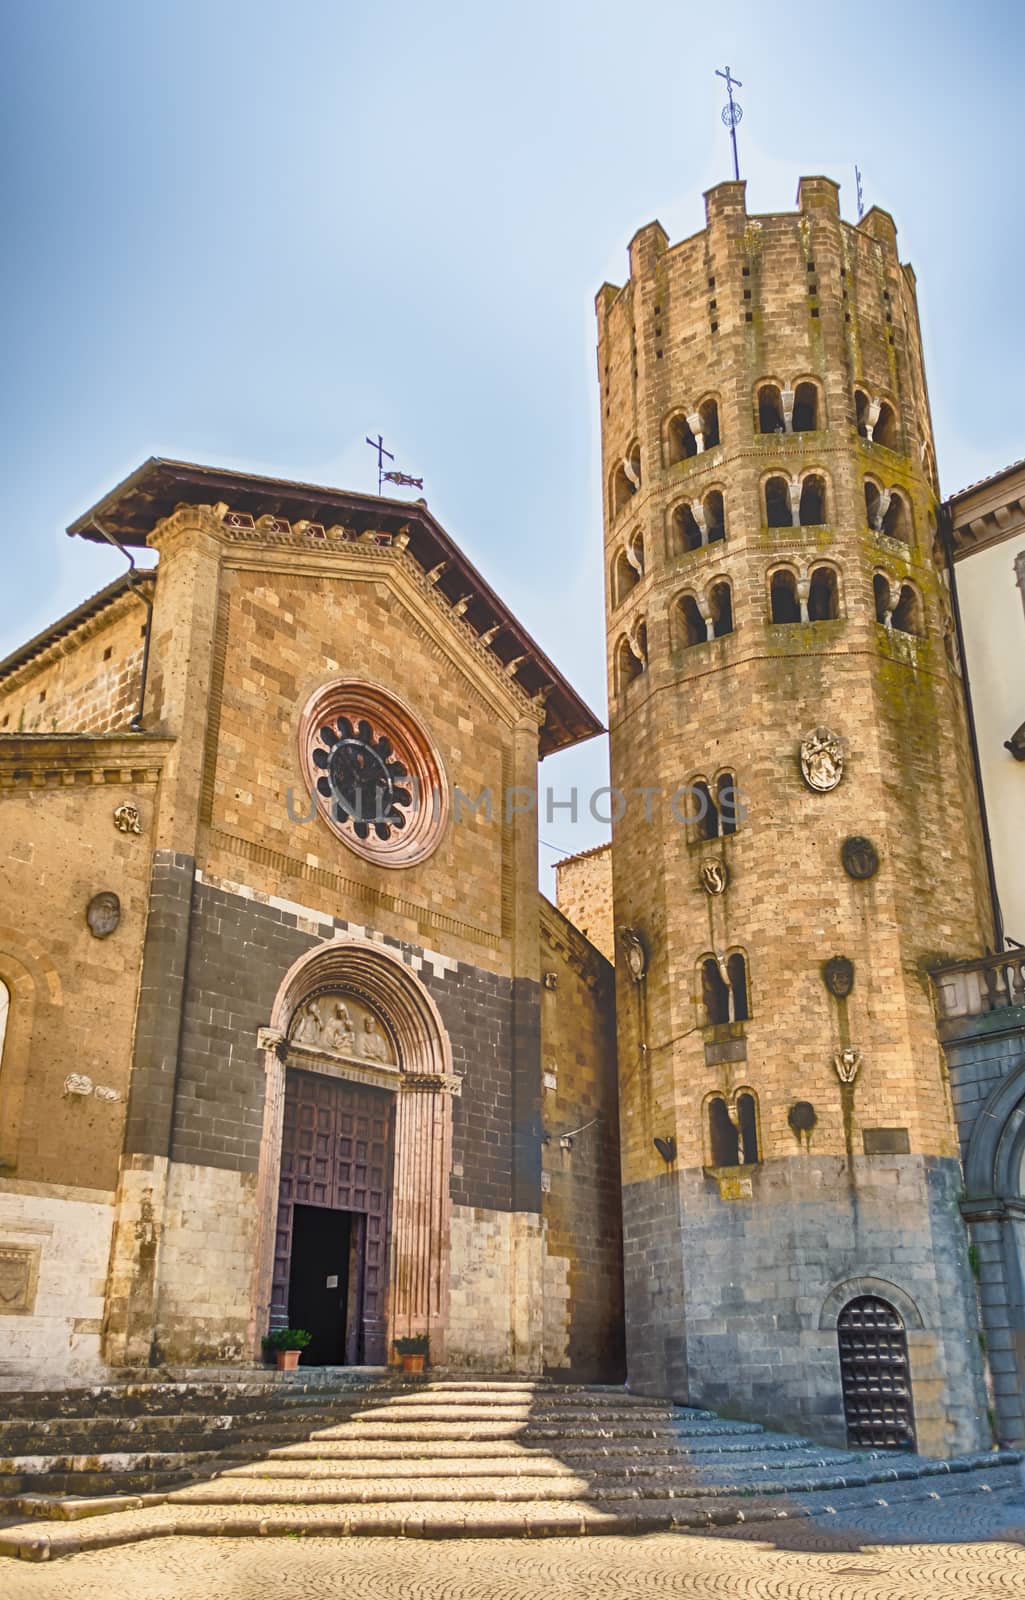 Medieval Church of St. Andrea, Orvieto, Italy by marcorubino